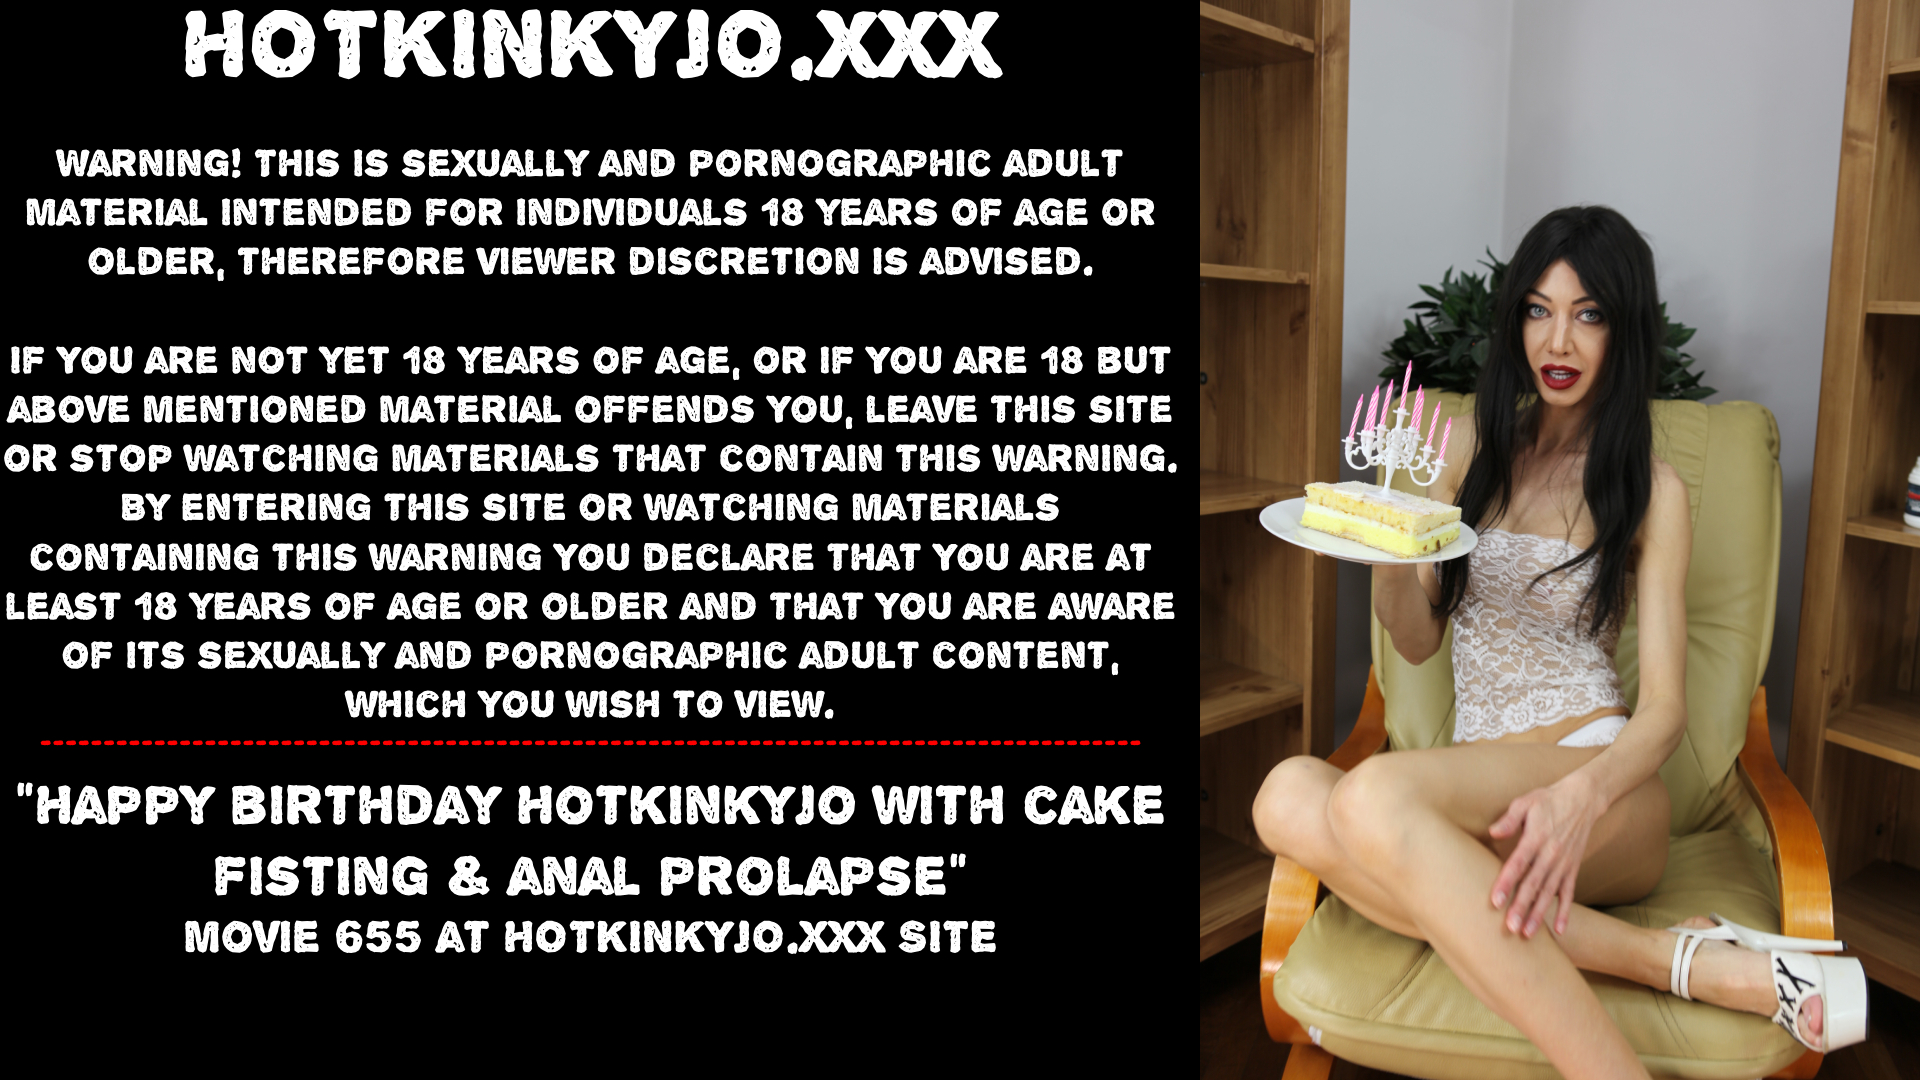 Happy birthday Hotkinkyjo cake fisting & anal prolapse - ThisVid.com en...